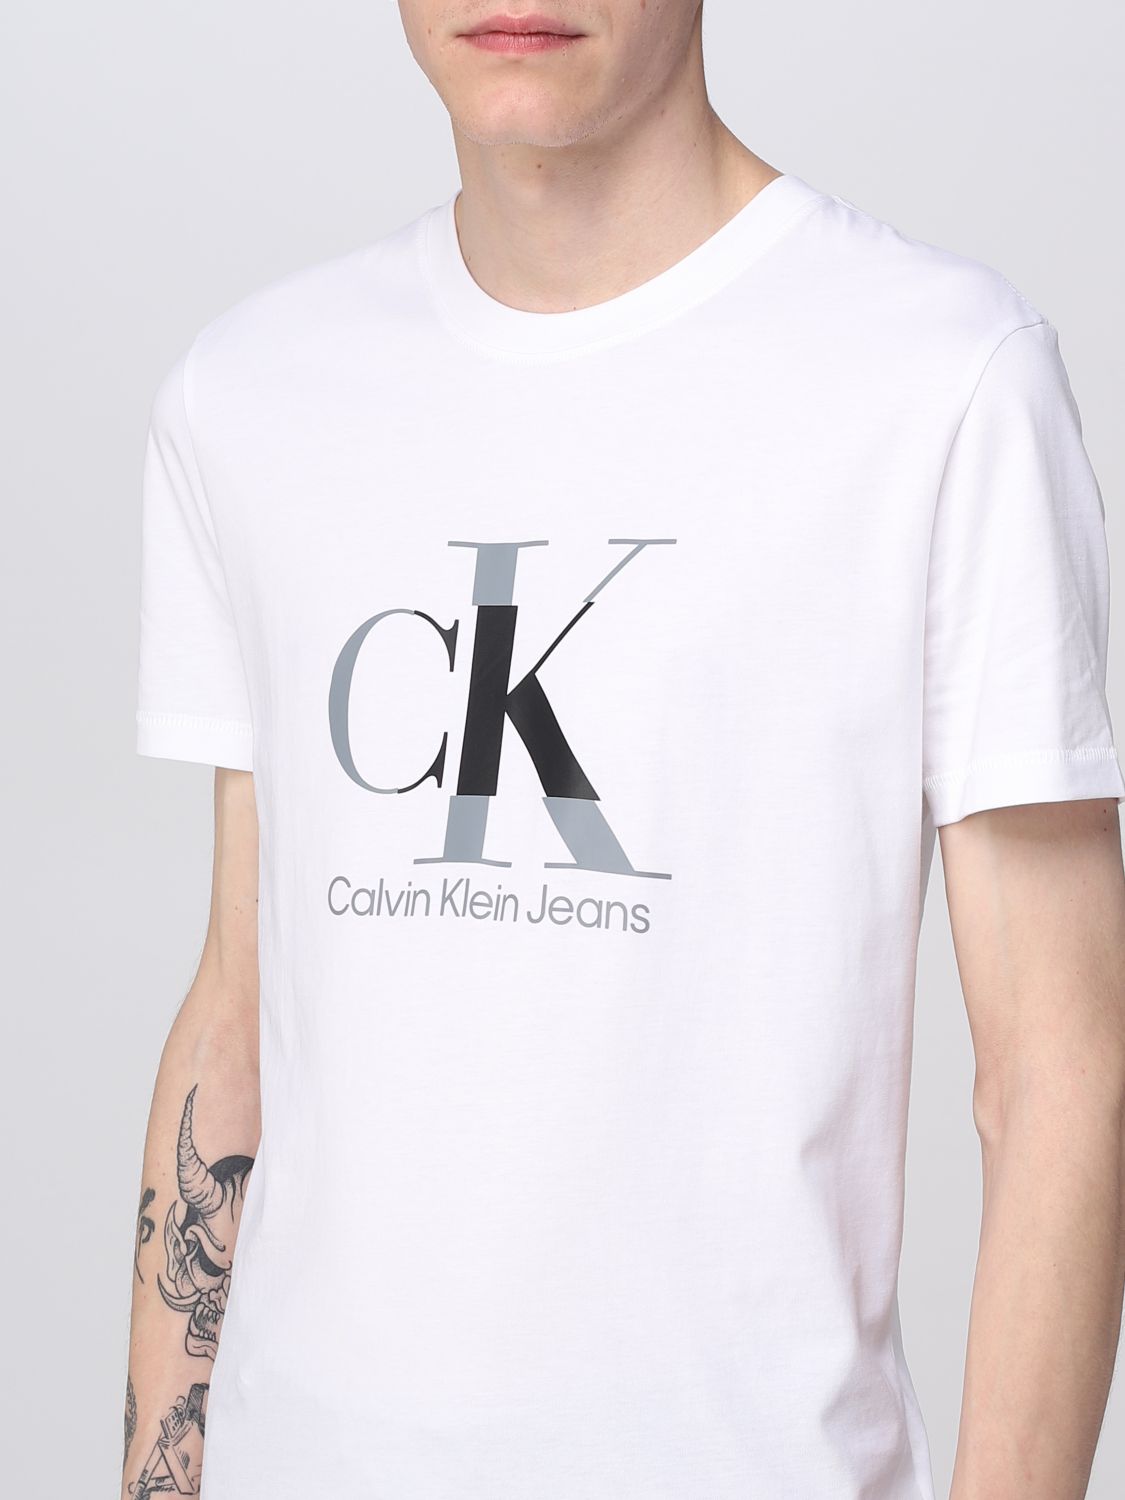 opbouwen historisch Duizeligheid CALVIN KLEIN JEANS: t-shirt for man - White | Calvin Klein Jeans t-shirt  J30J323299 online on GIGLIO.COM